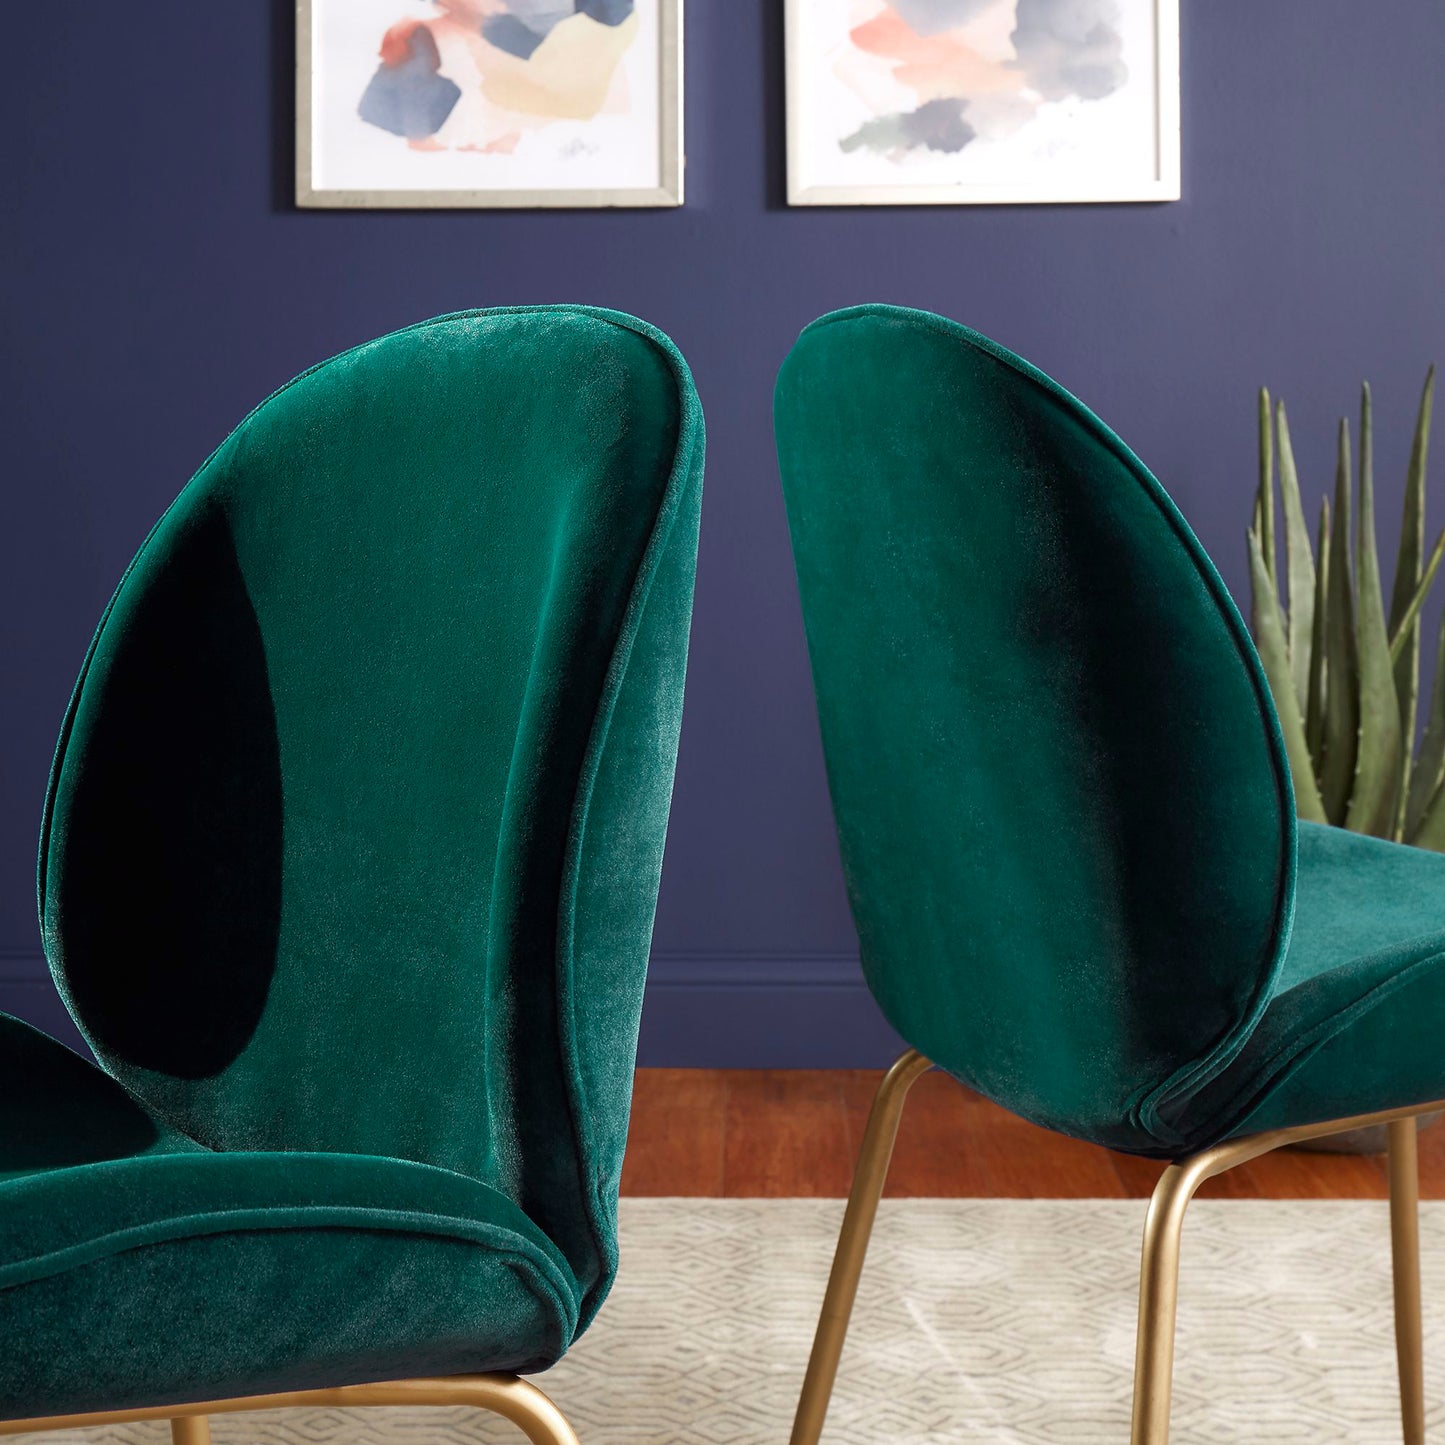 Velvet Upholstered Gold Finish Dining Chairs (Set of 2) - Green Velvet